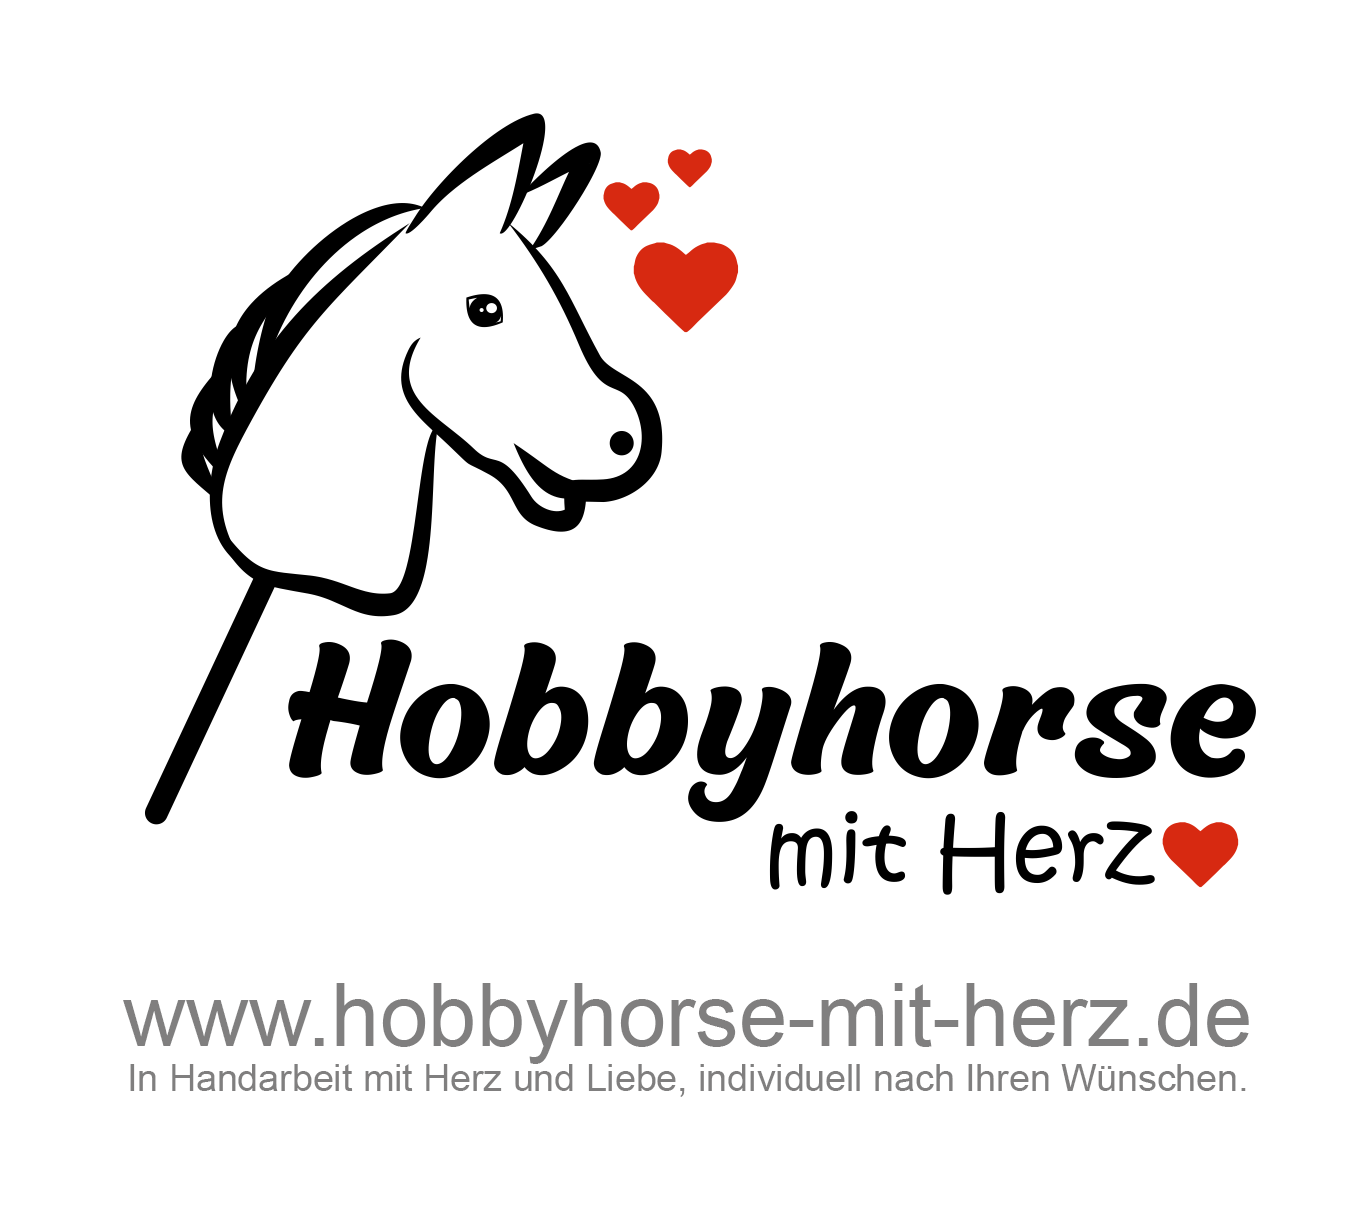 (c) Hobbyhorse-mit-herz.de